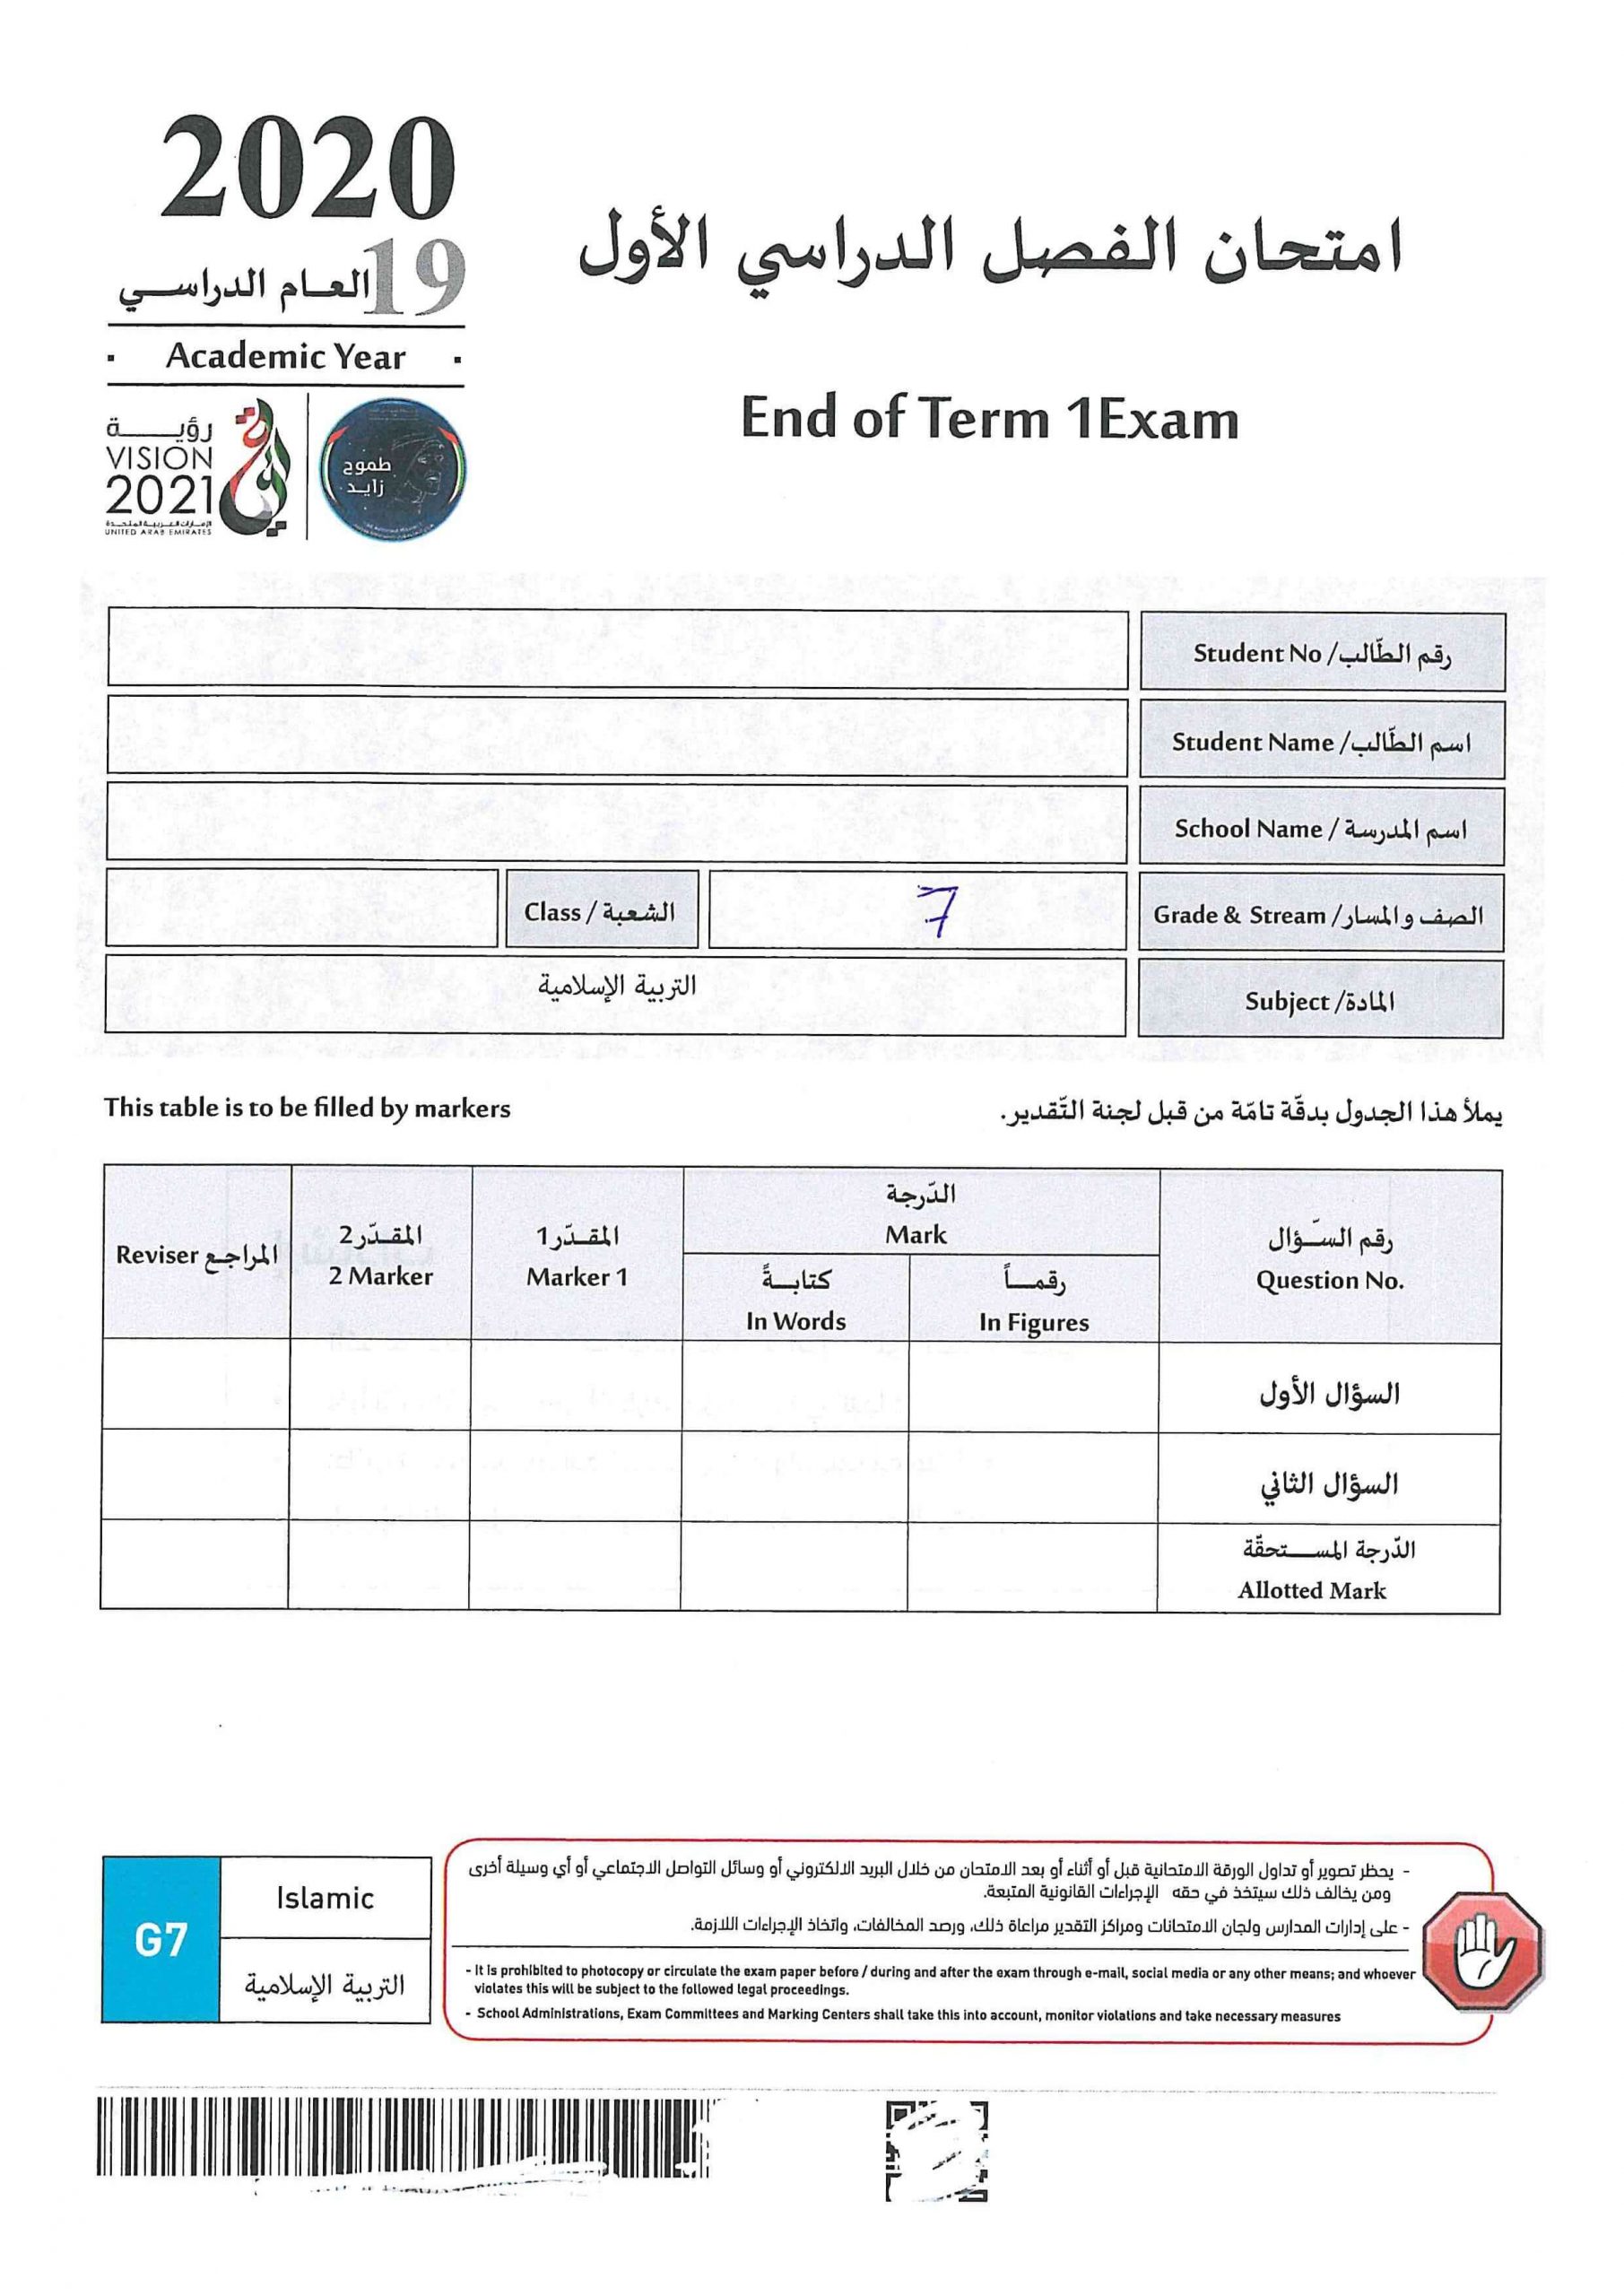 امتحان نهاية الفصل الدراسي الاول 2019-2020 الصف السابع مادة التربية الاسلامية